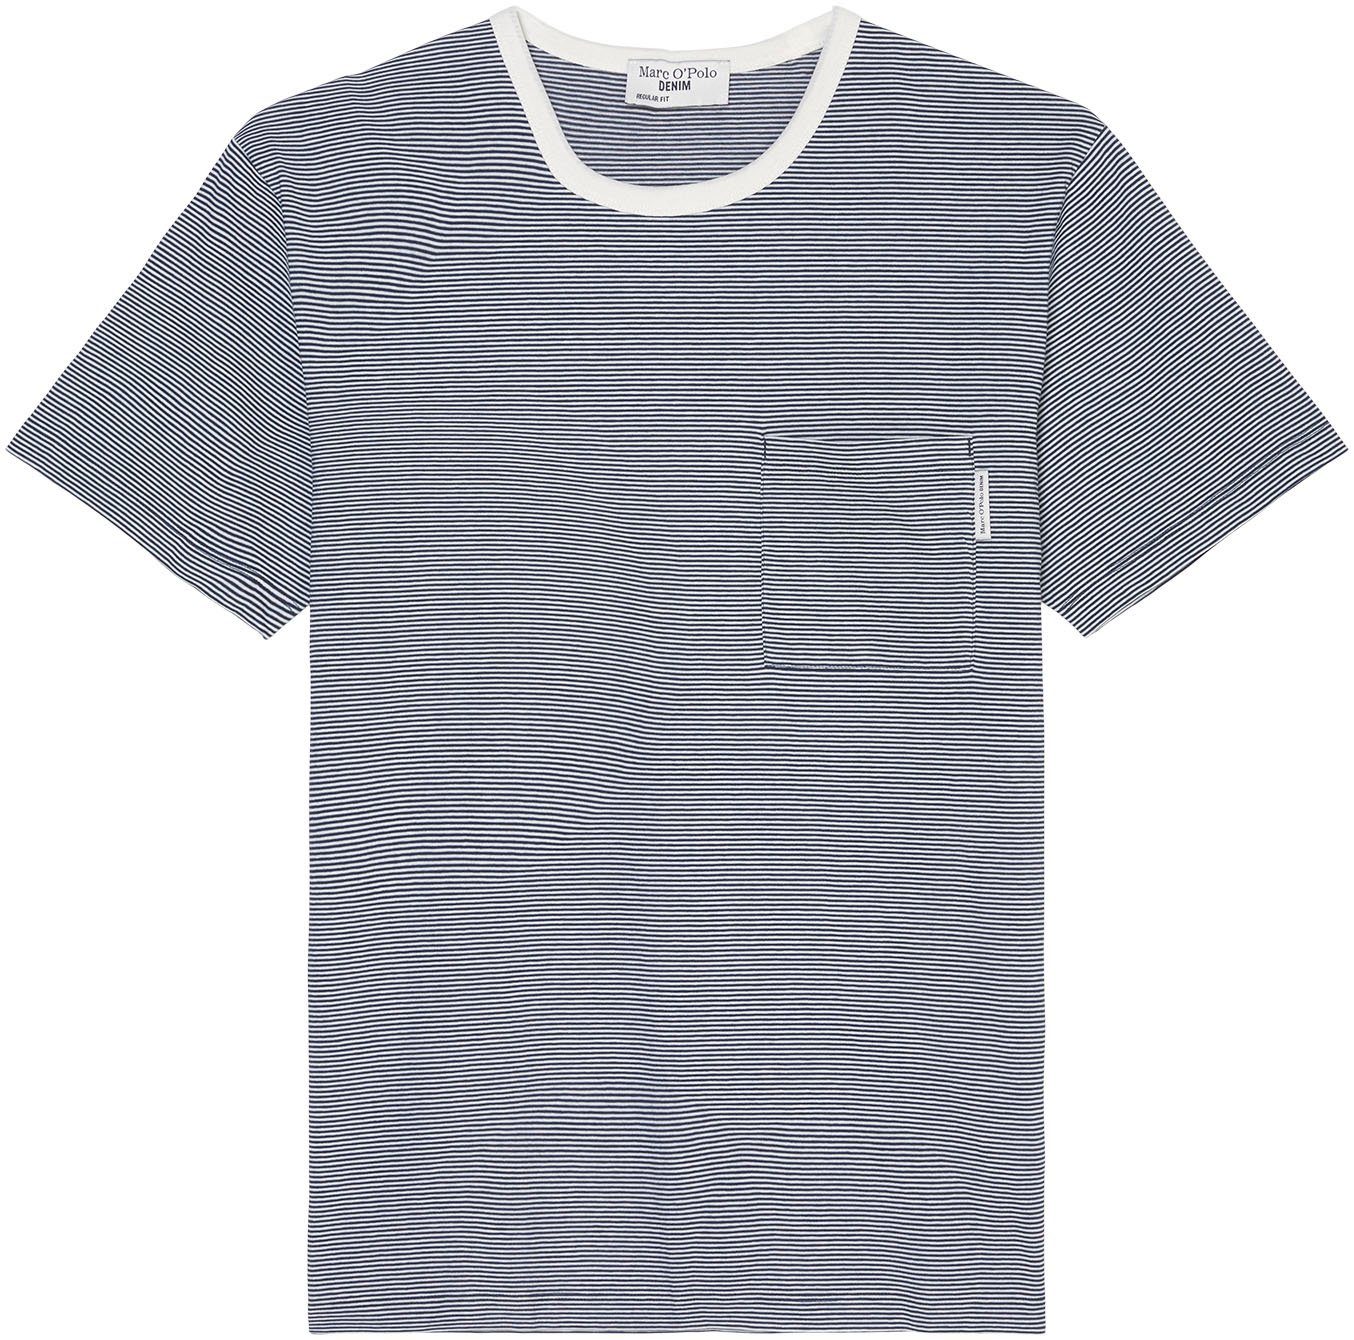 leichten gestreift im DENIM O'Polo T-Shirt Streifenmuster blau Marc